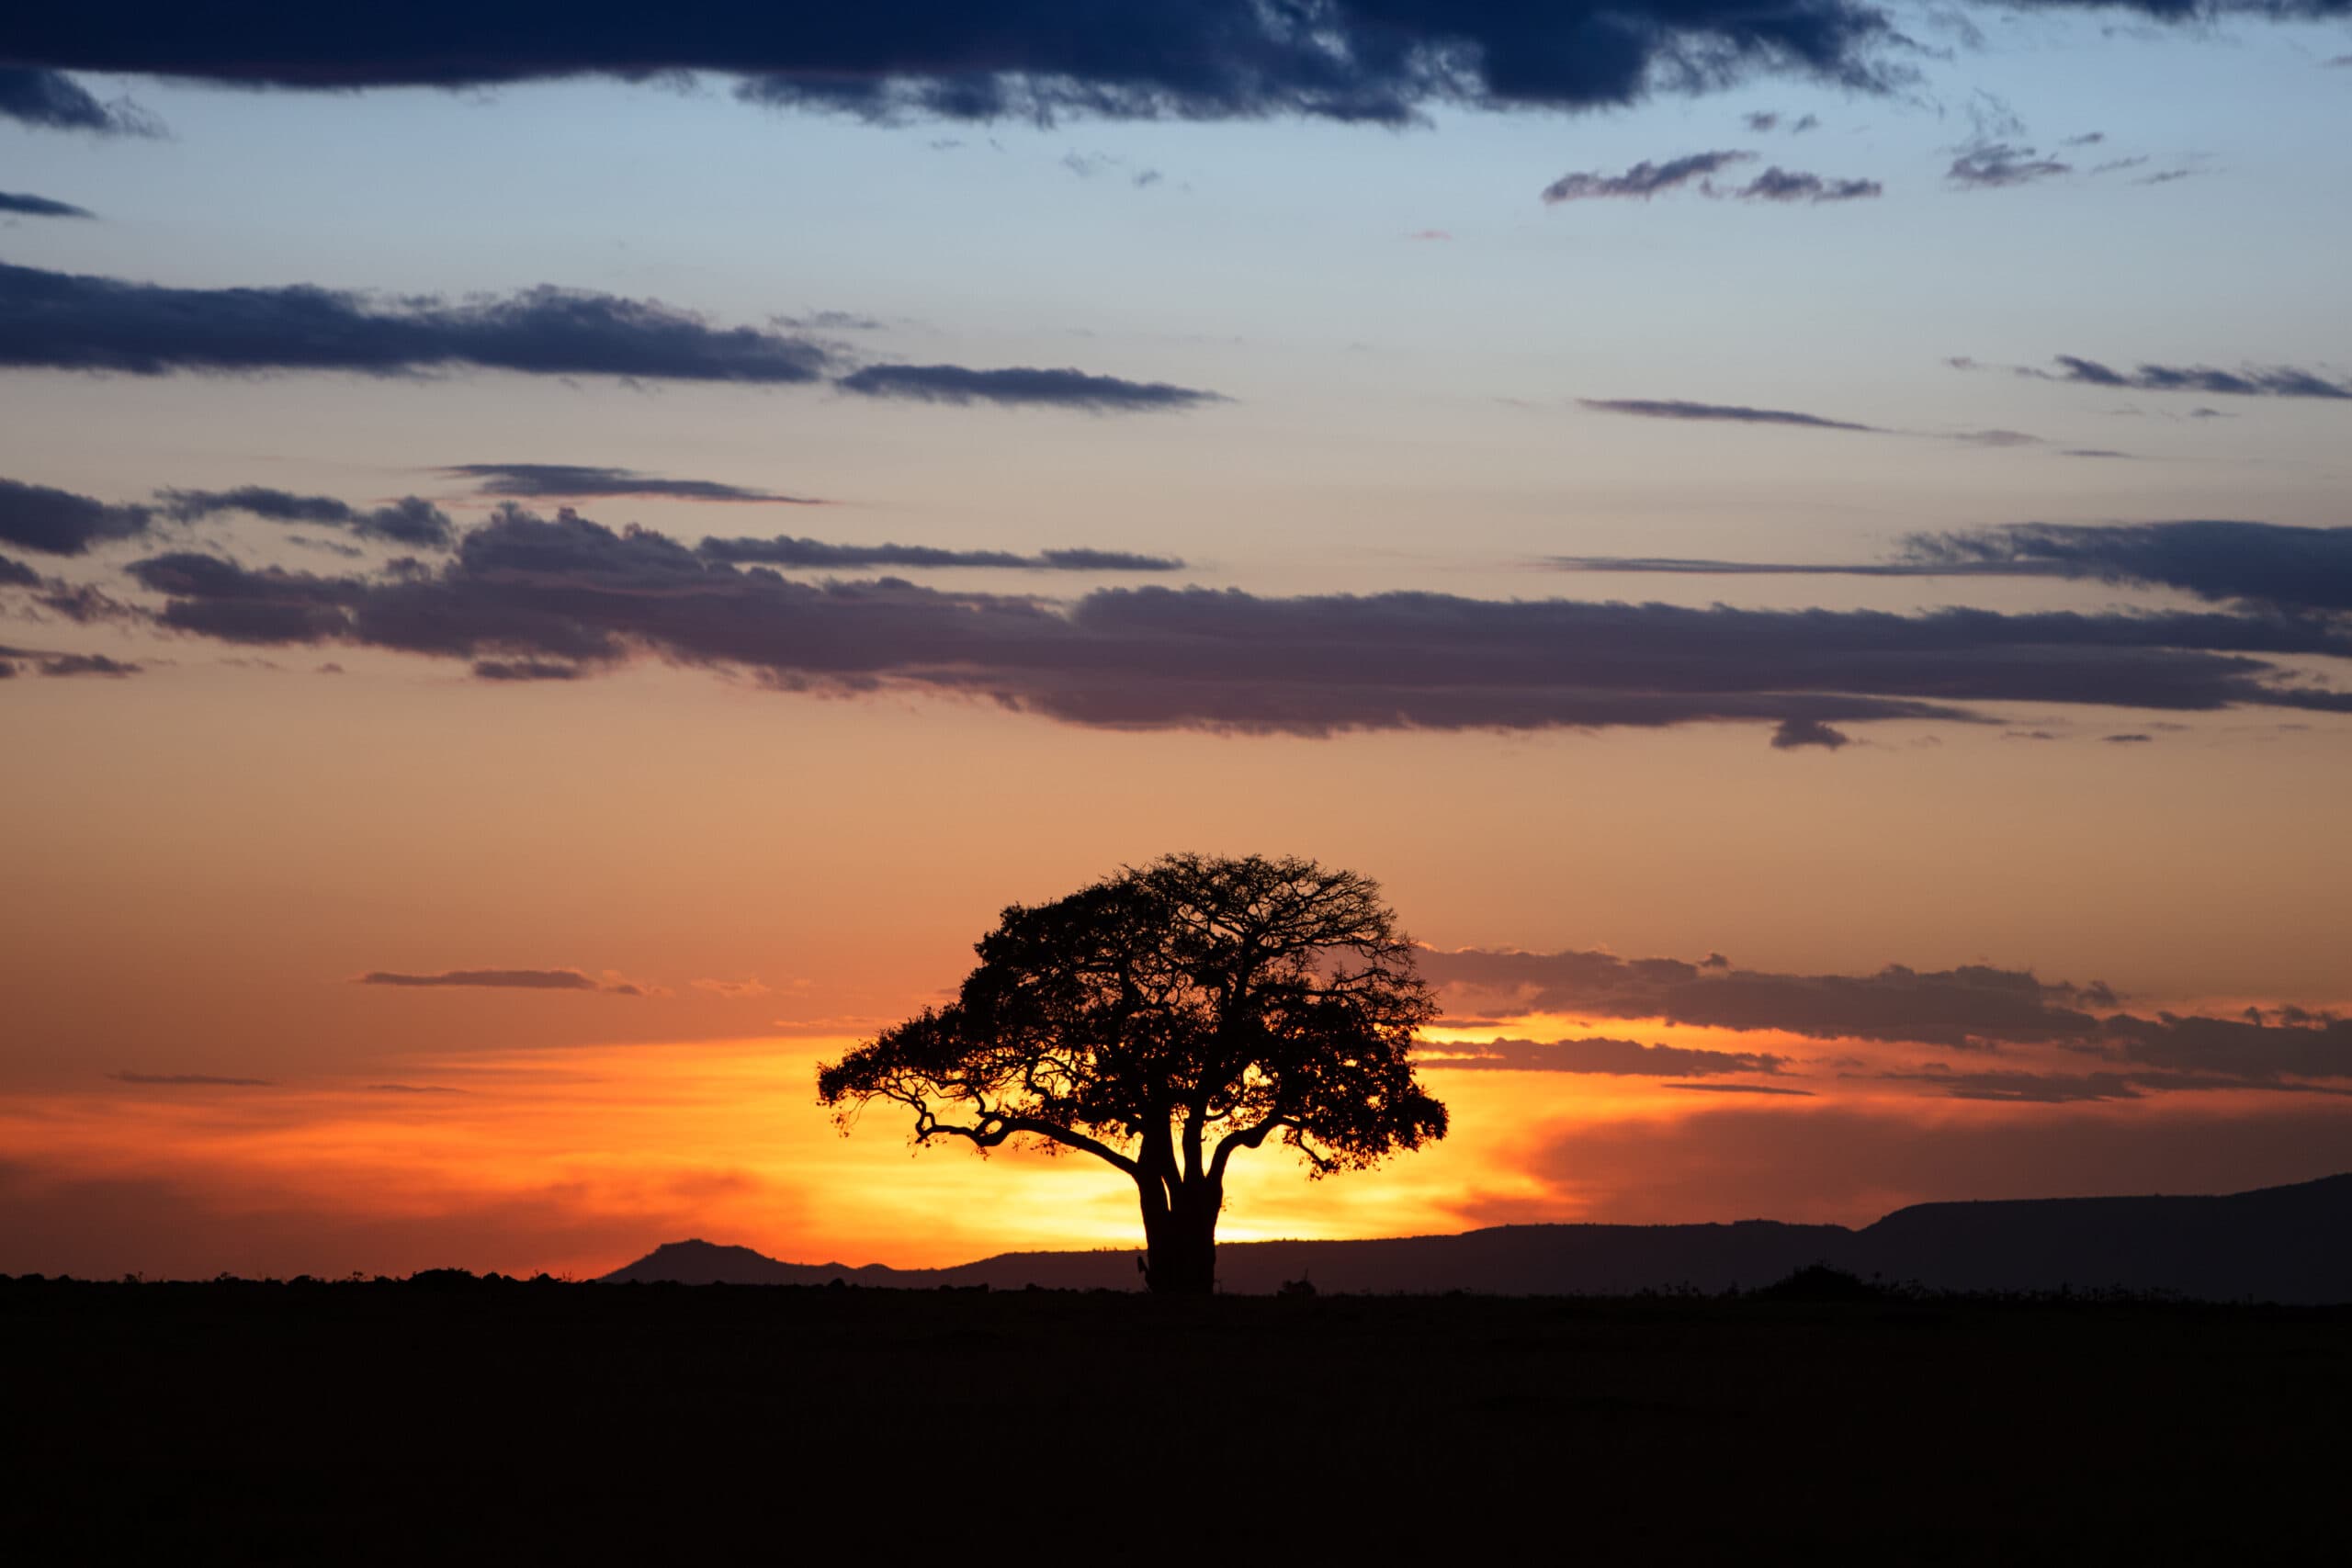 golden sunset in kenya africa 2022 06 17 03 13 50 utc scaled